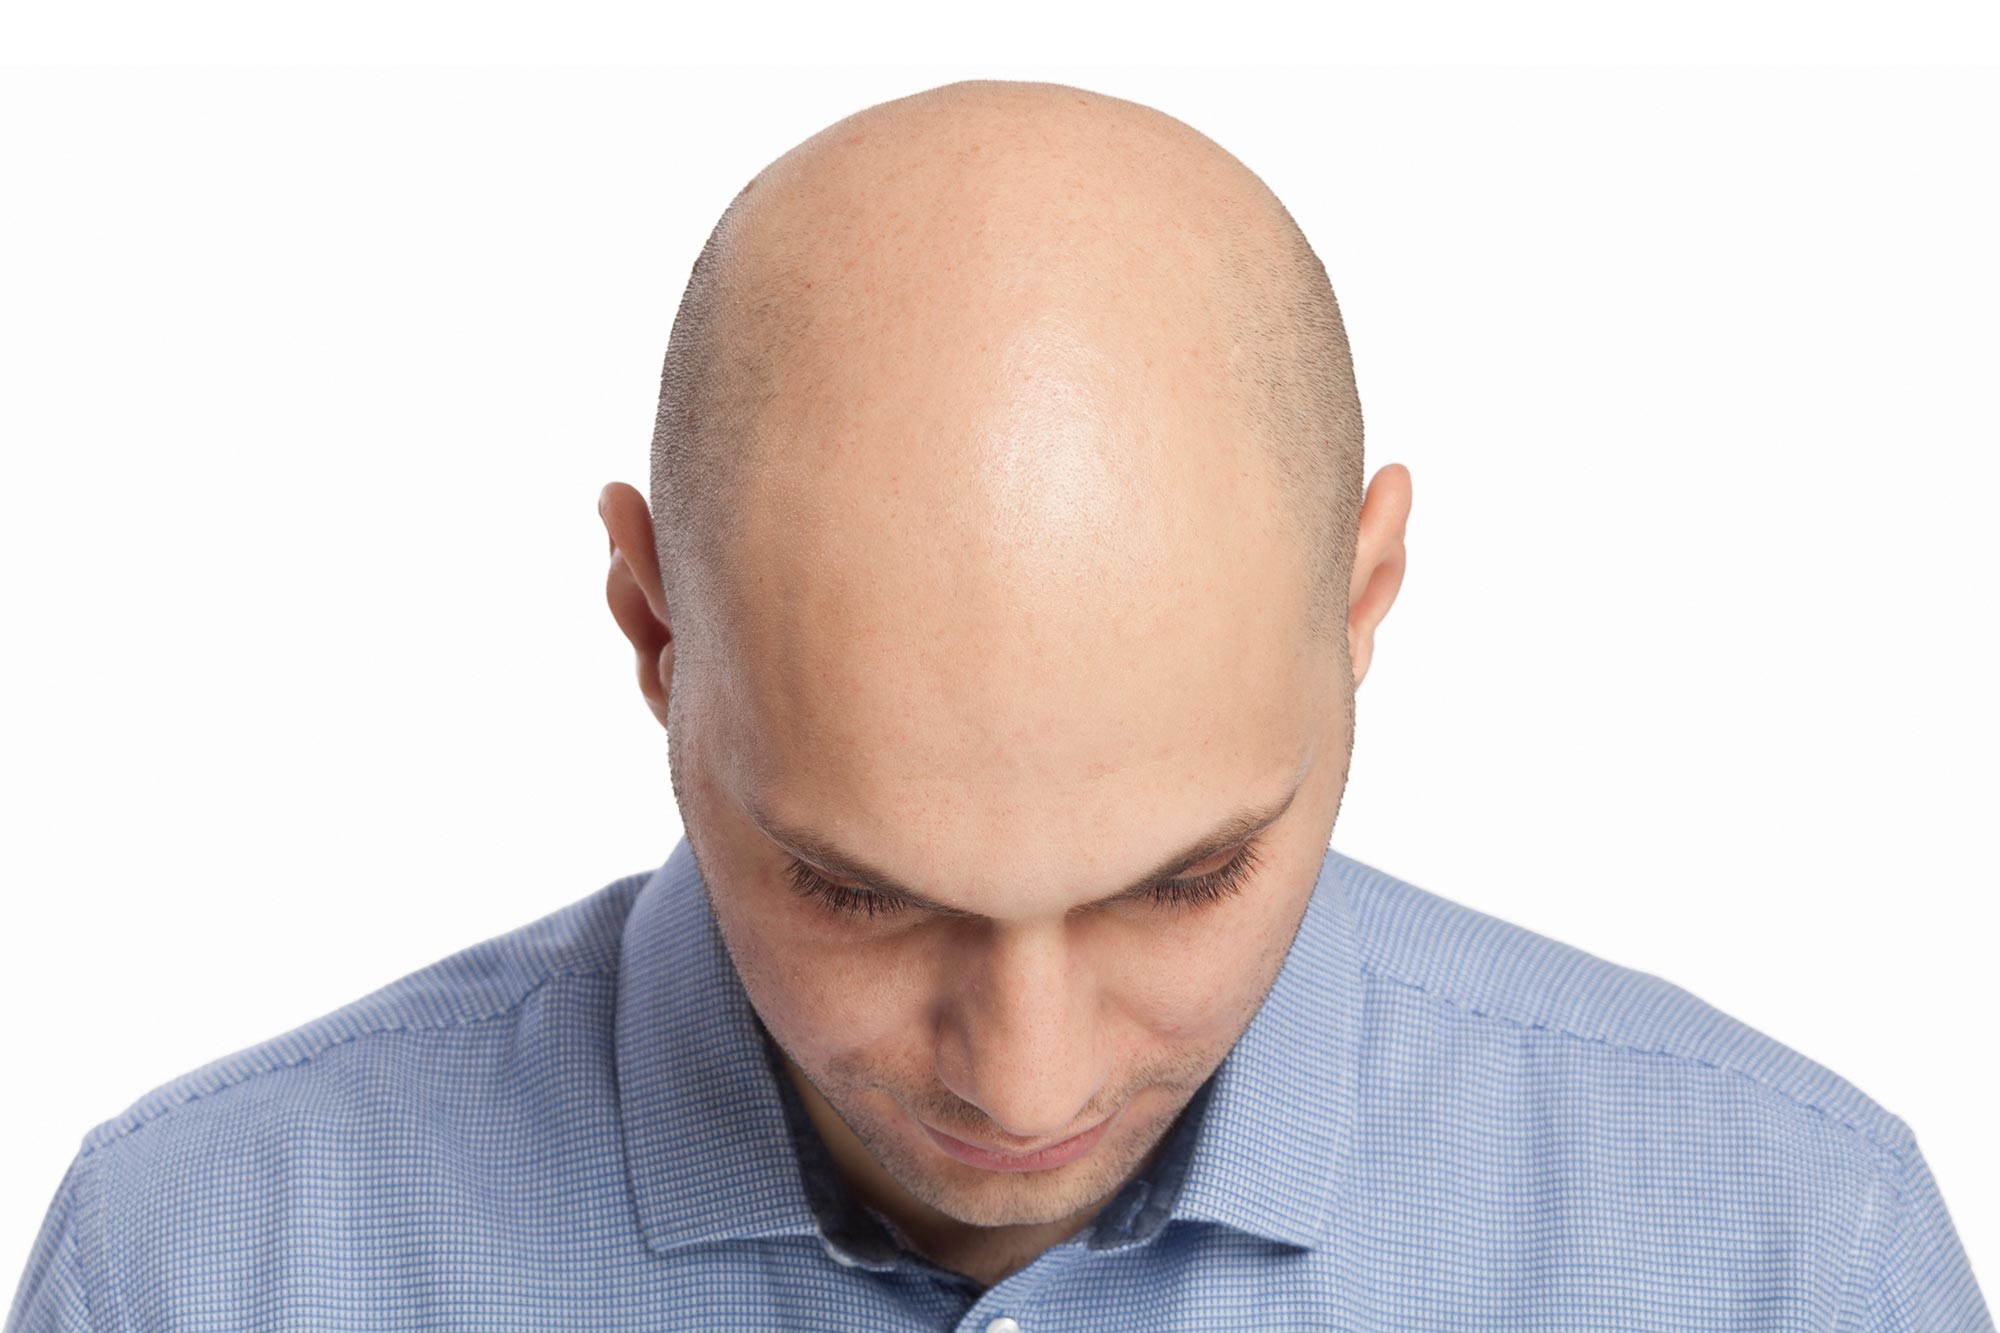 Head of a bald man